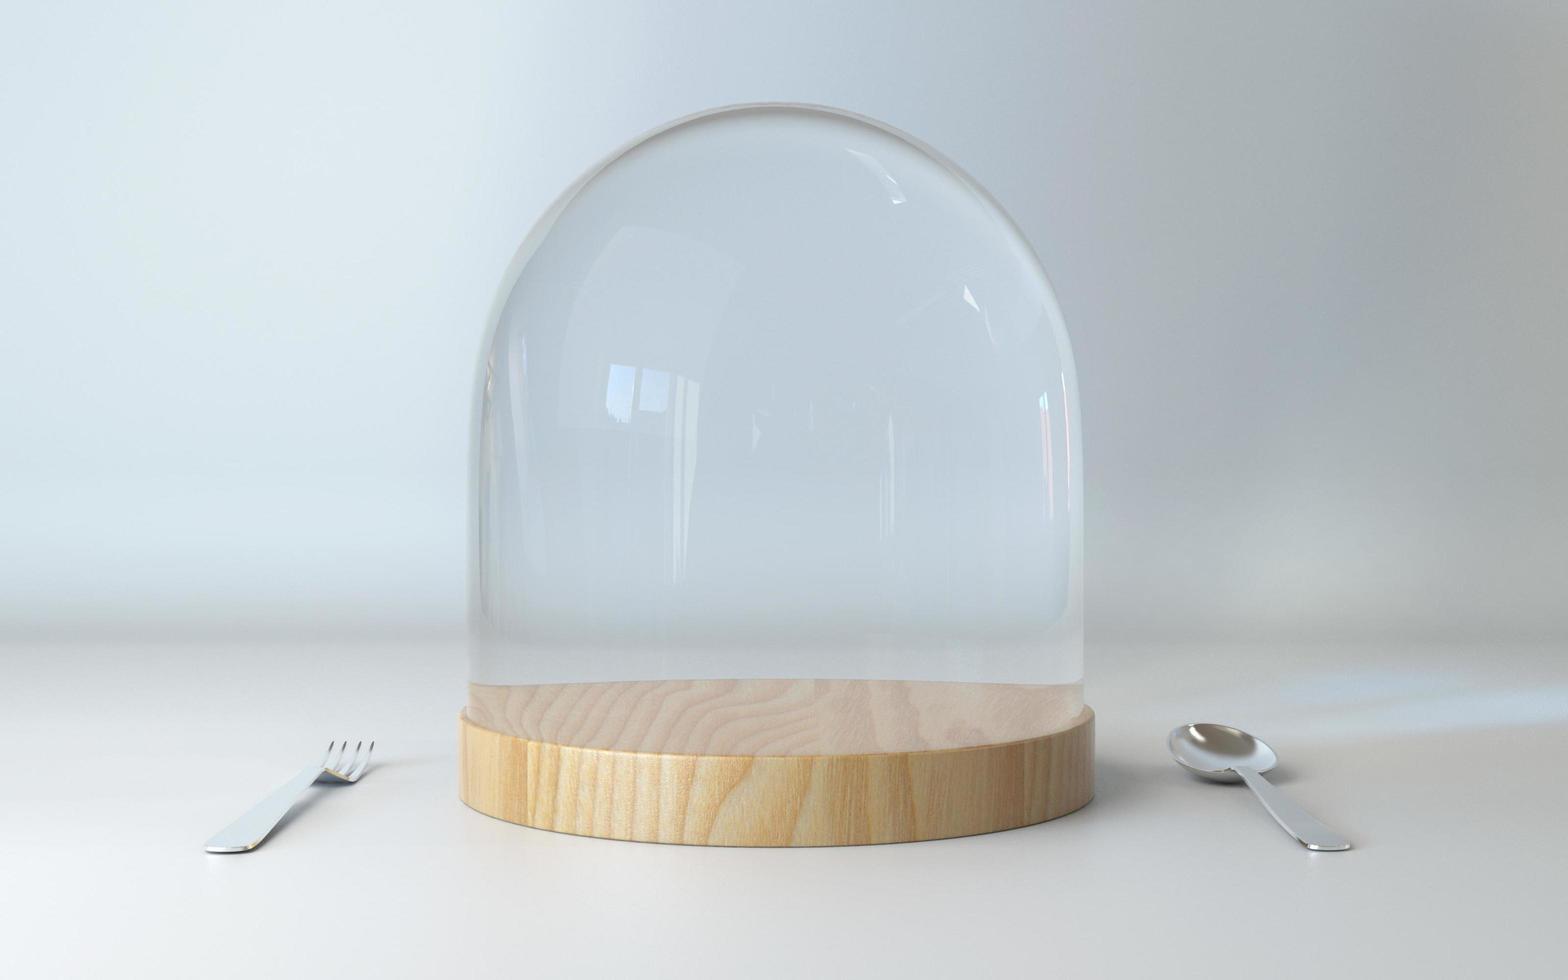 Glaskuppel auf Holzplatte mit Löffel und Gabel für Lebensmittelanzeige 3D-Rendering foto